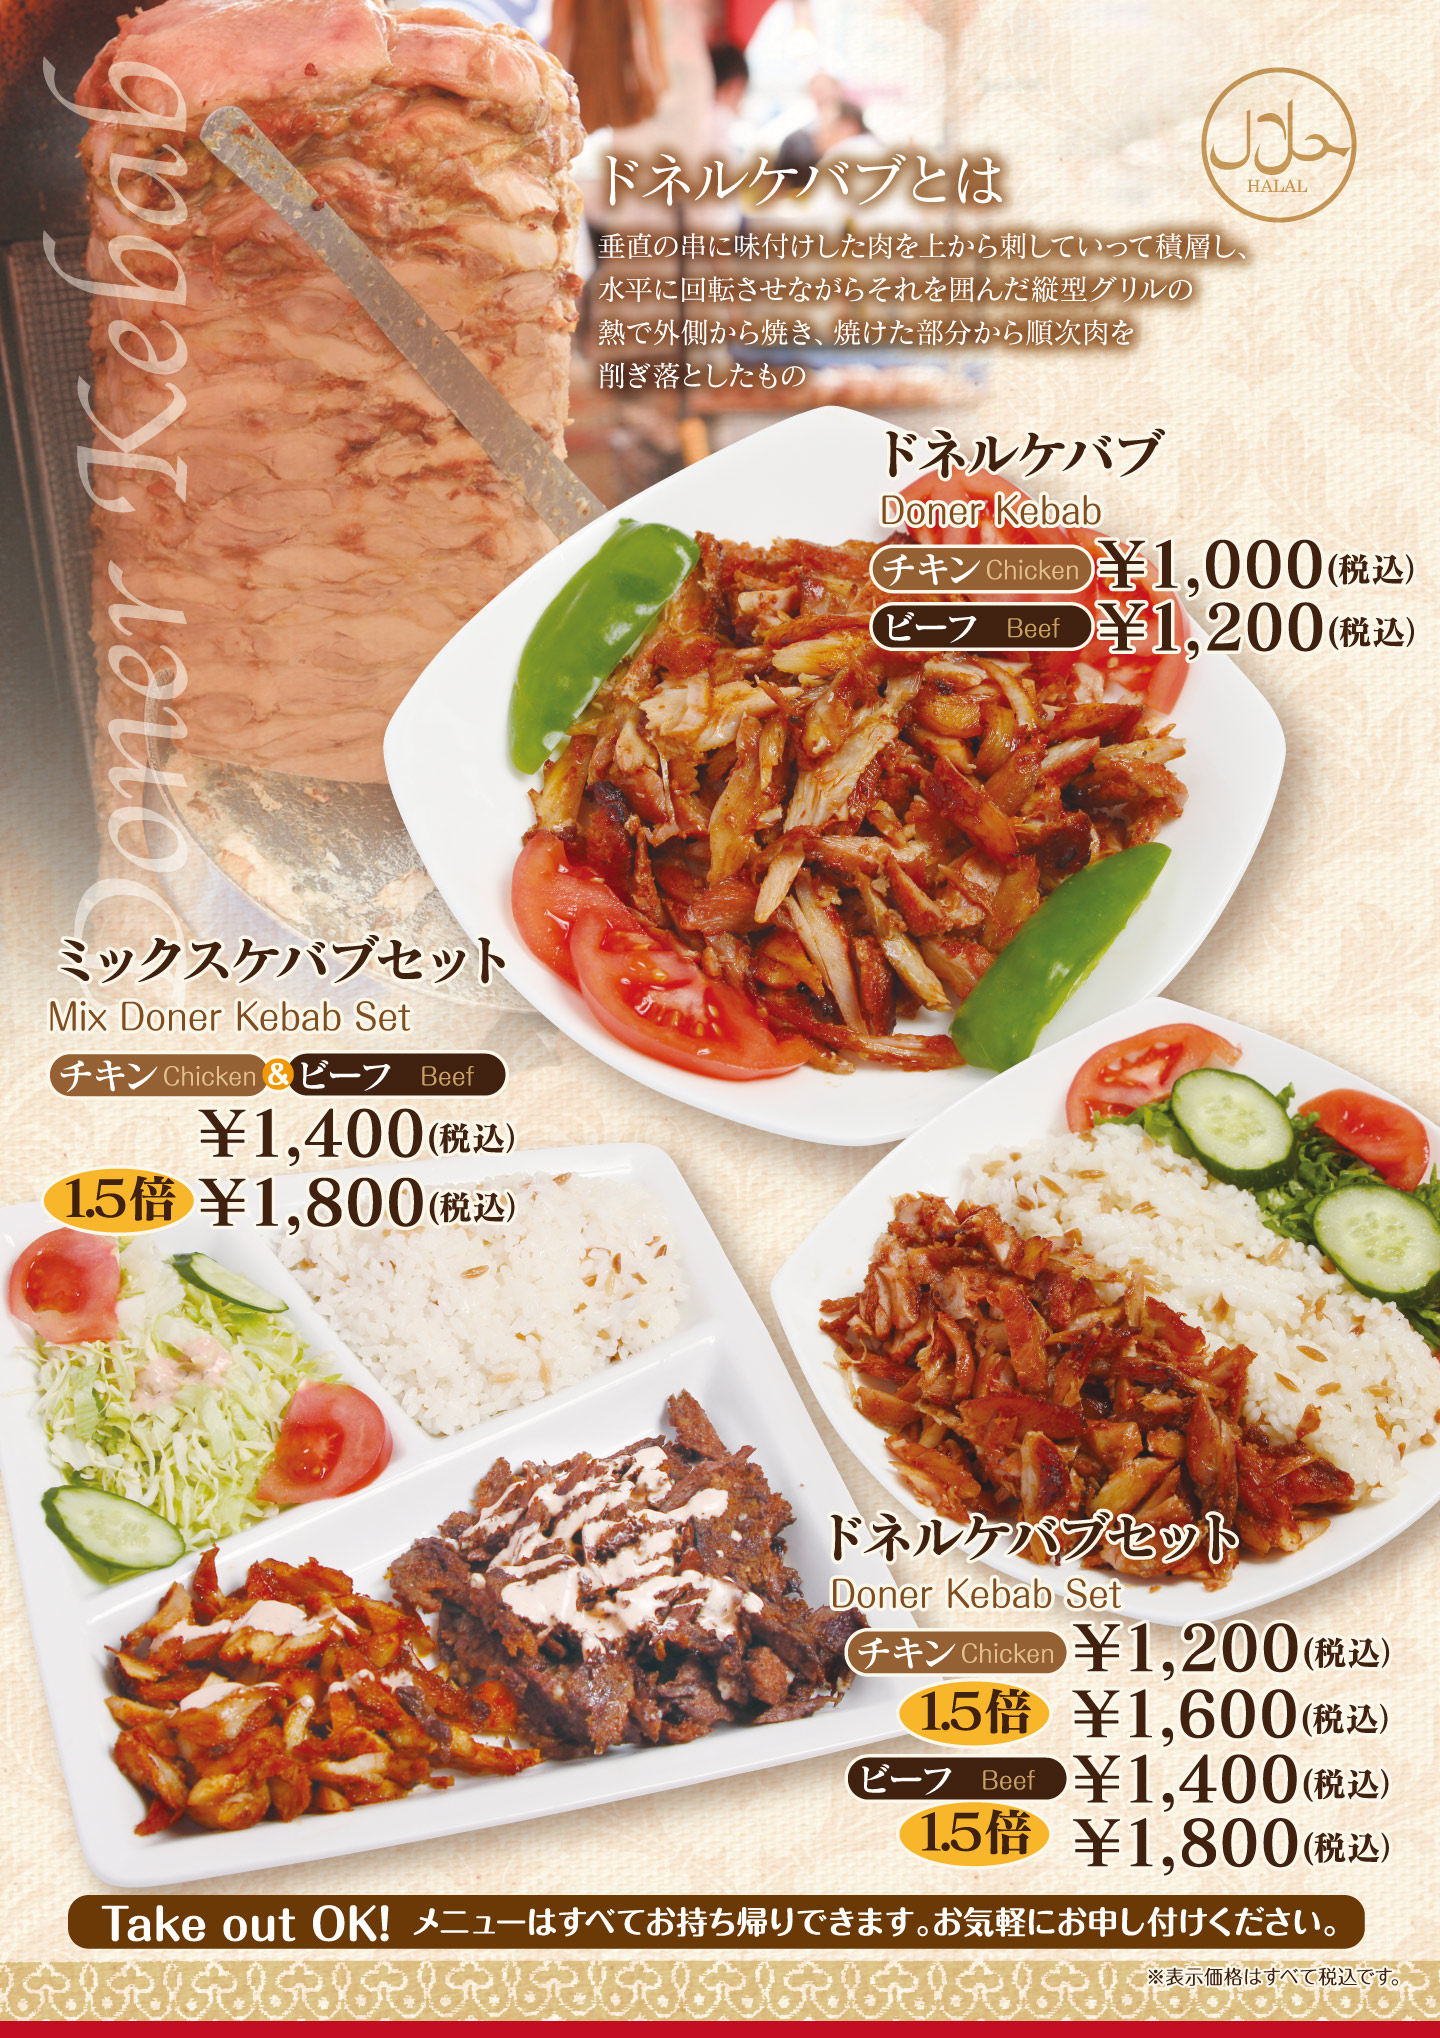 名古屋市中村区「本陣駅」すぐ近くにあるトルコ料理専門店「ターキッシュテイスト(TakishTaste)」のドネルケバブメニューです。チキンとビーフが選べます。